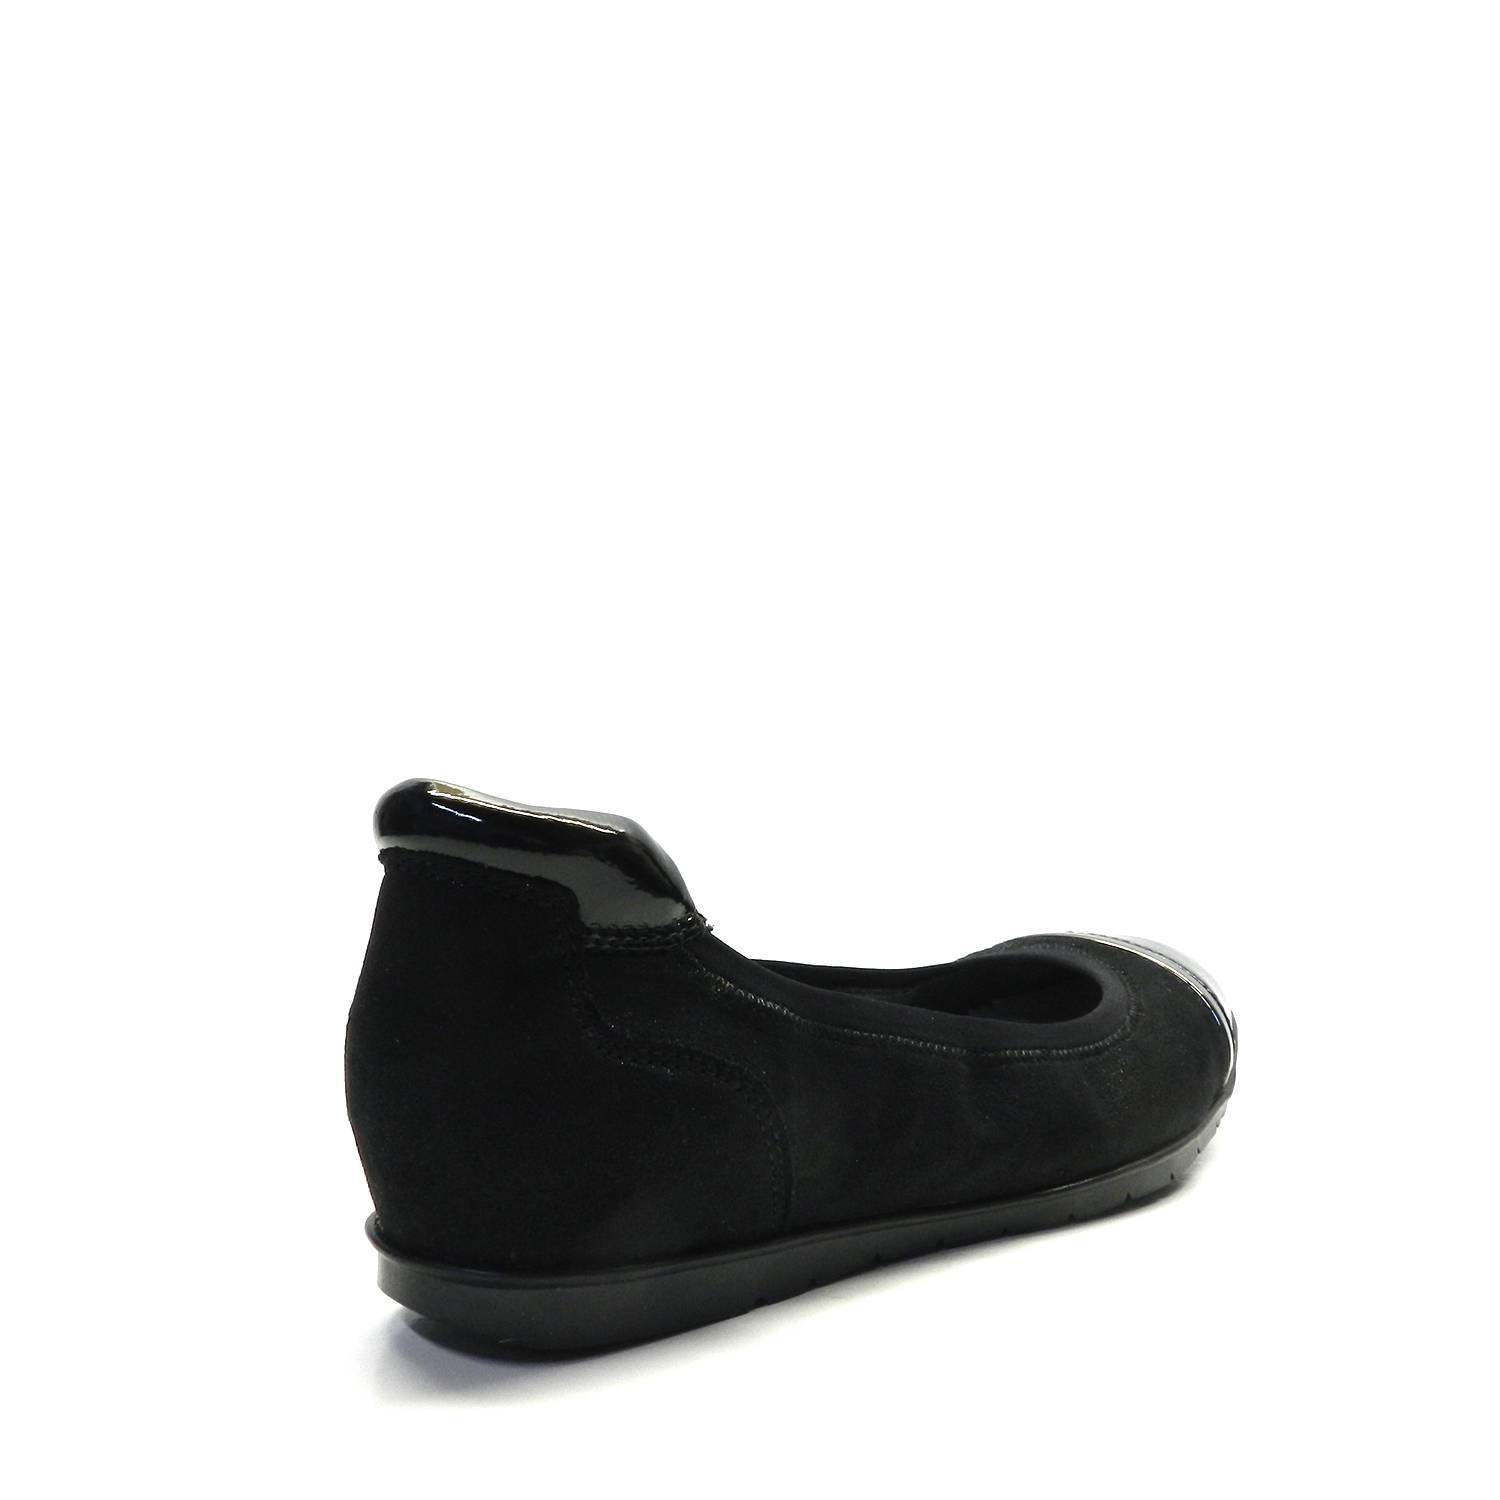 Zapatos TAMARIS 22103 BLACK